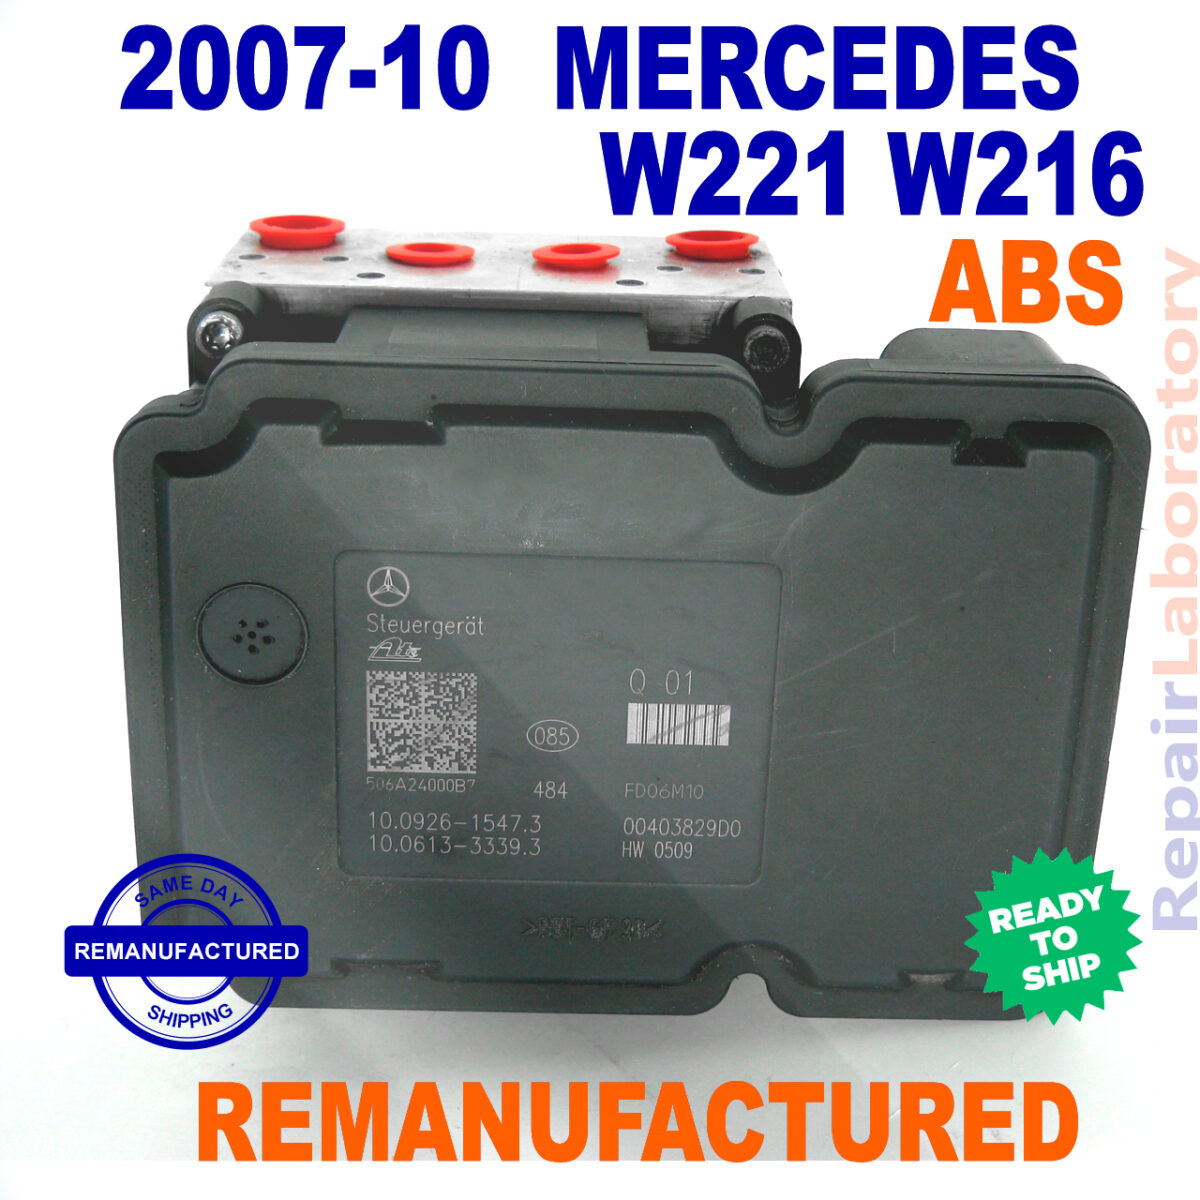 07-10_mercedes_w221_w216_remanufactured_module